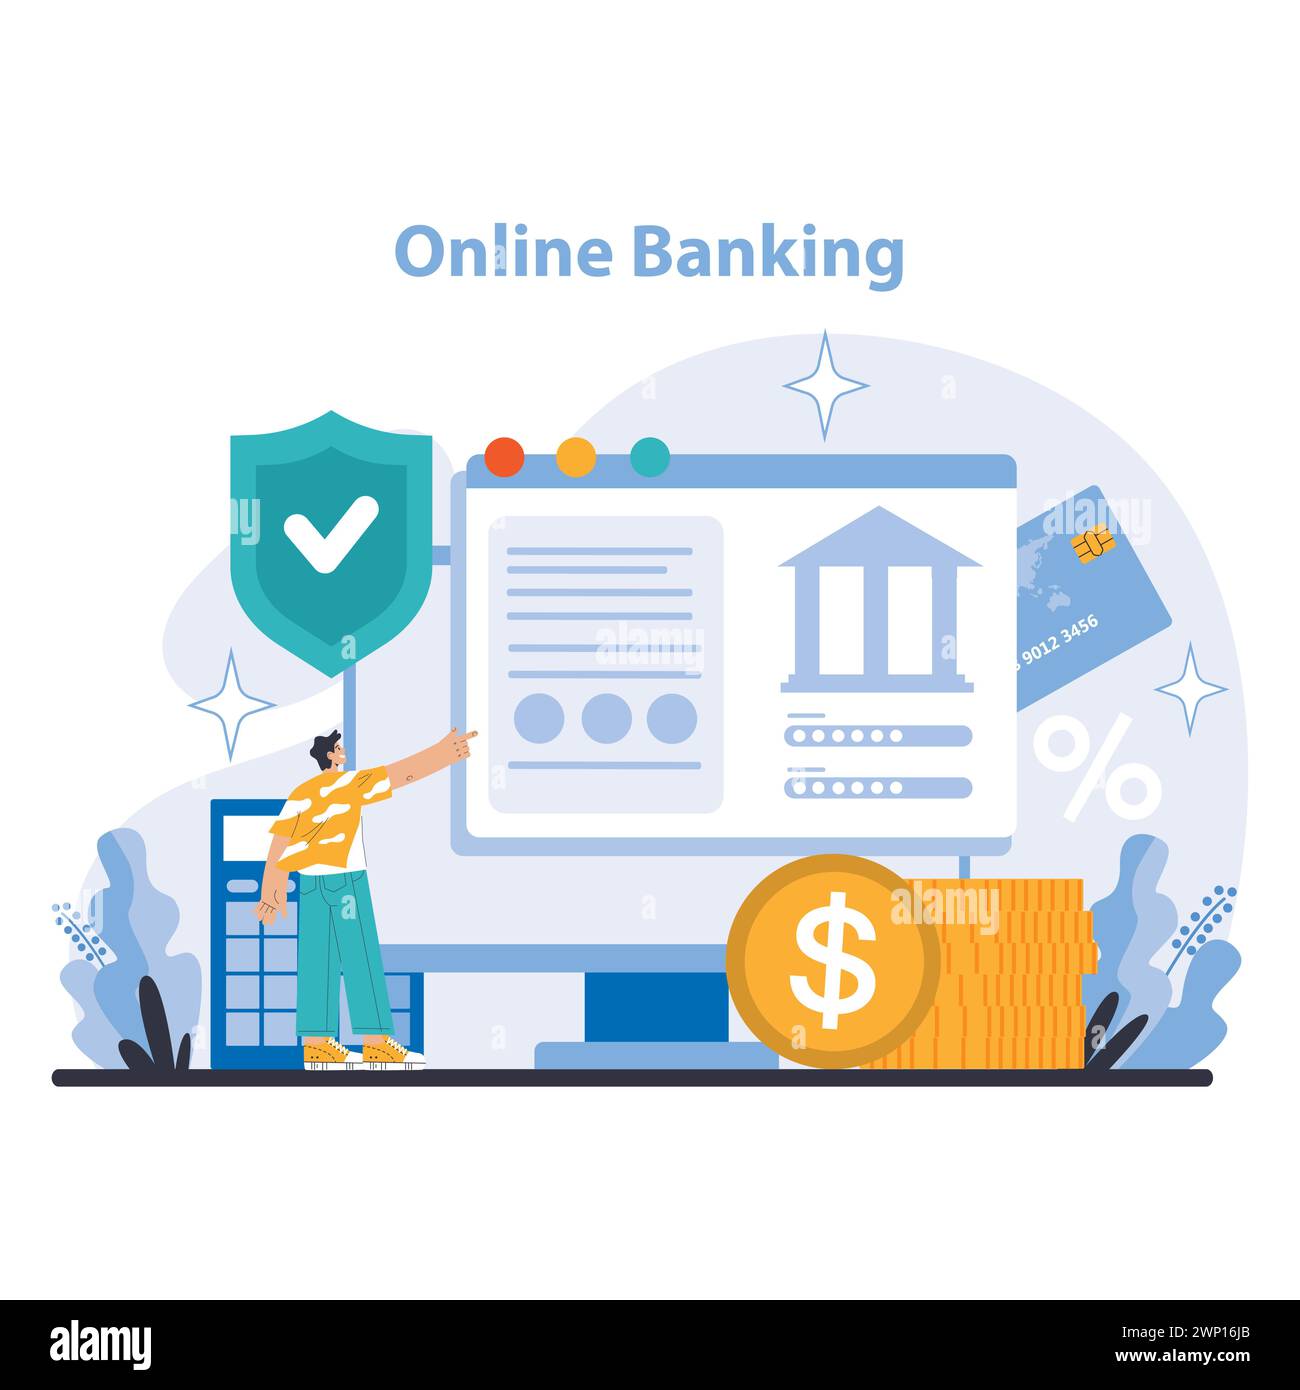 Online-Banking-Konzept. Benutzerfreundliche digitale Banking-Plattform für sichere Transaktionen und Kontoverwaltung. Technologie trifft auf Finanzen. Illustration des flachen Vektors. Stock Vektor